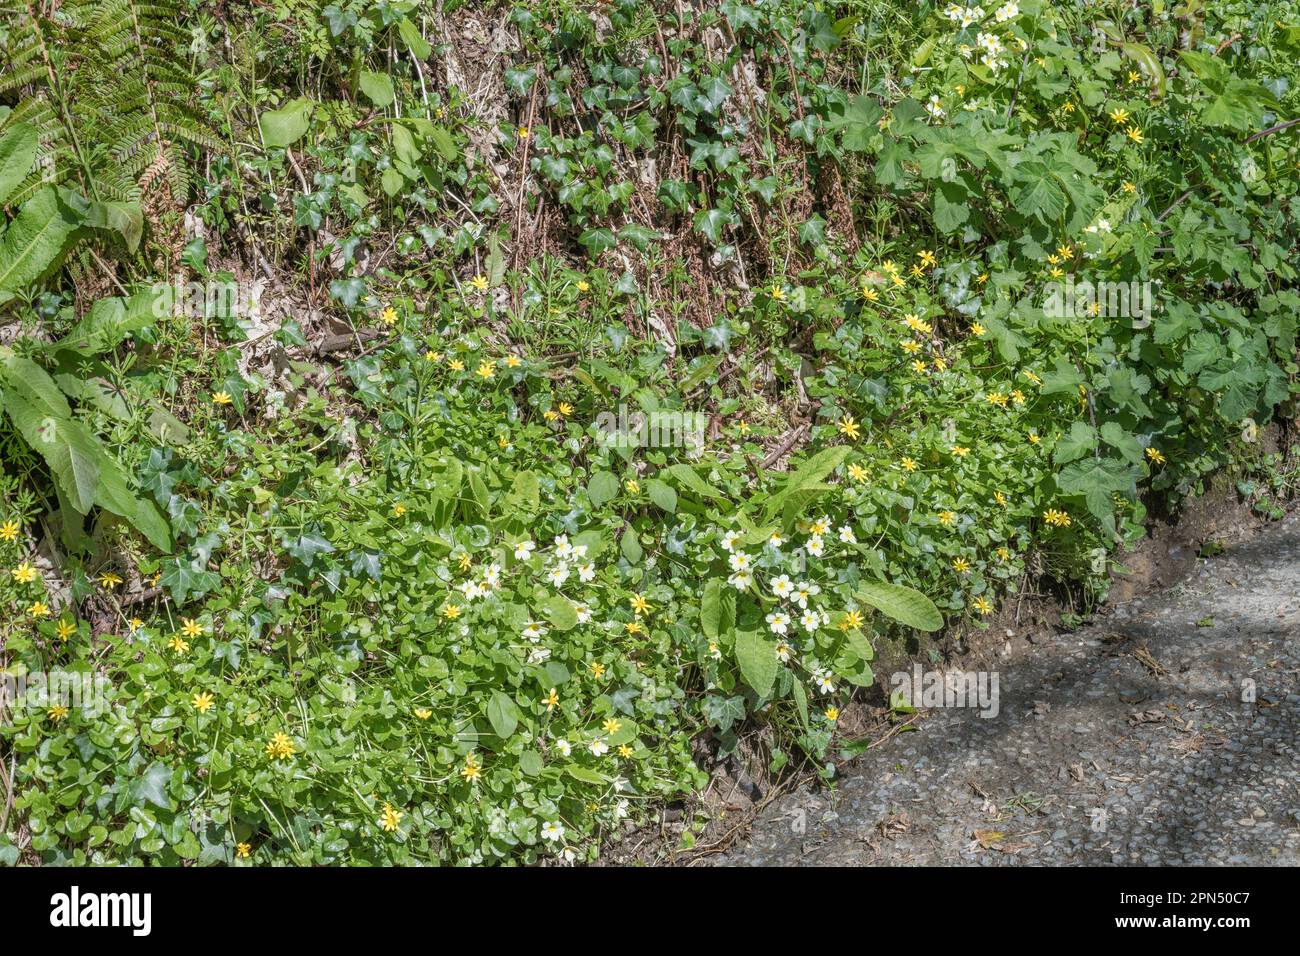 Gelbe Blüten von Lesser Celandine / Ranunculus ficaria, Ficaria verna & Primrose / Primula vulgaris in der Frühlingssonne. Beide Heilpflanzen. Stockfoto